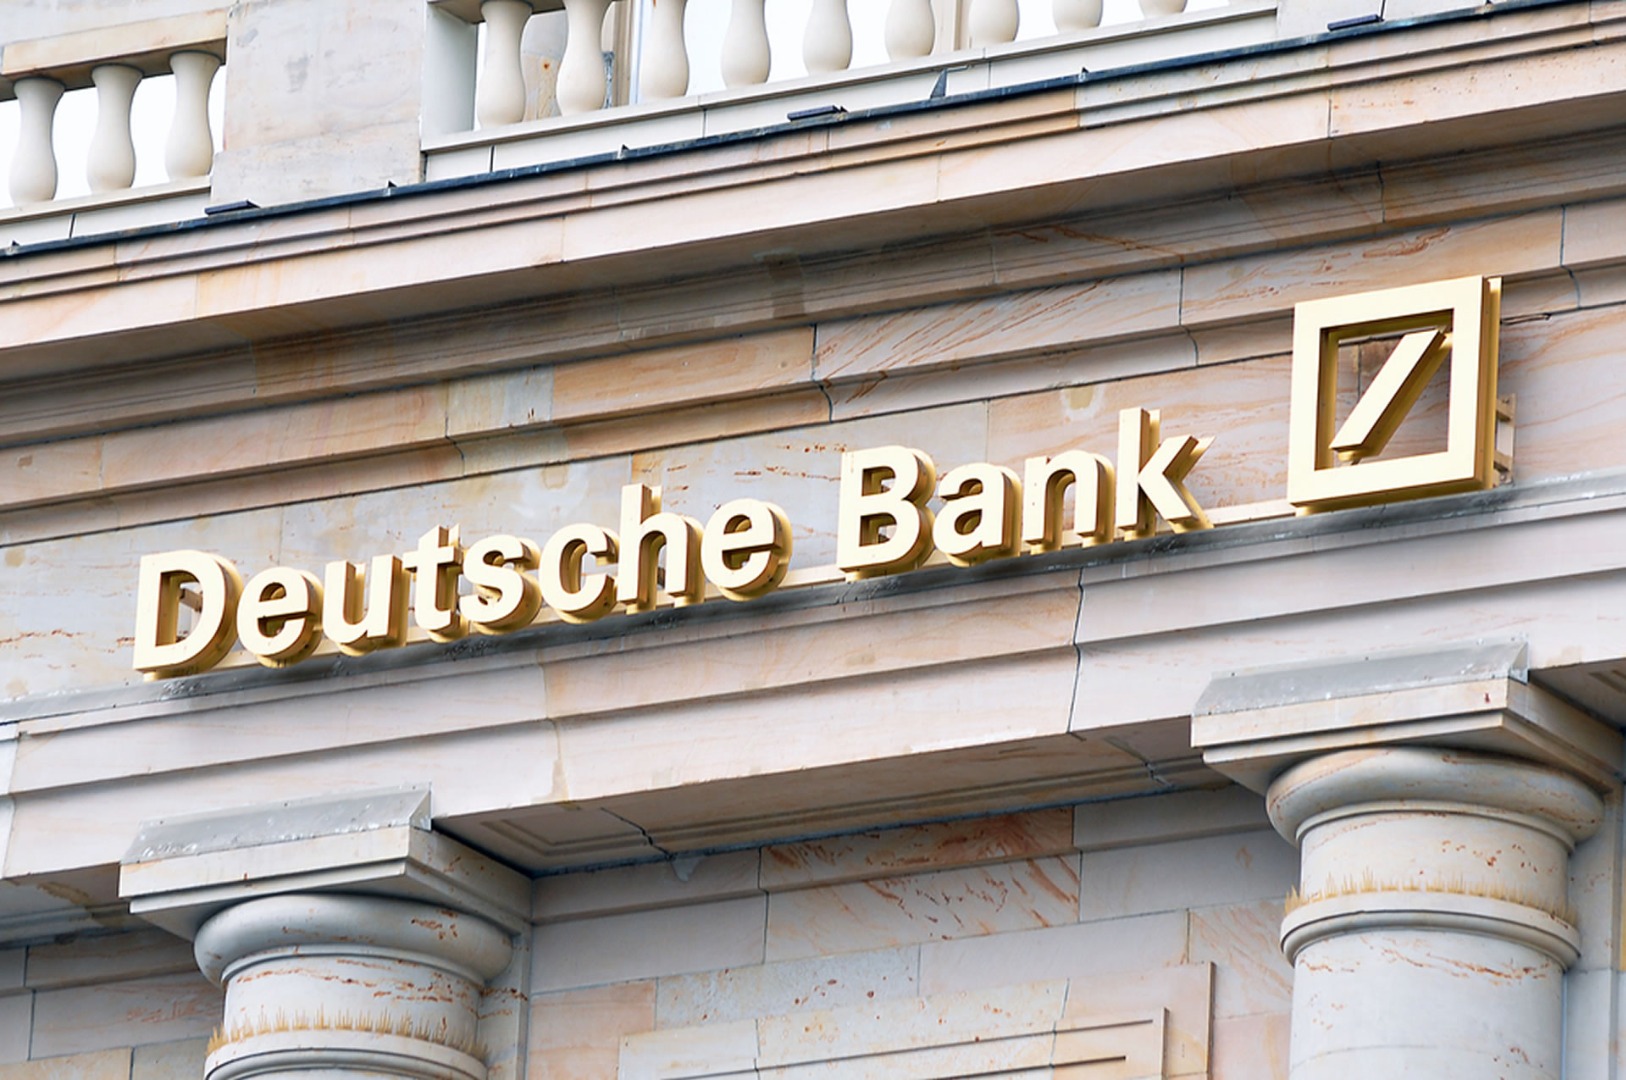 Deutsche Bank rekor açıkladı